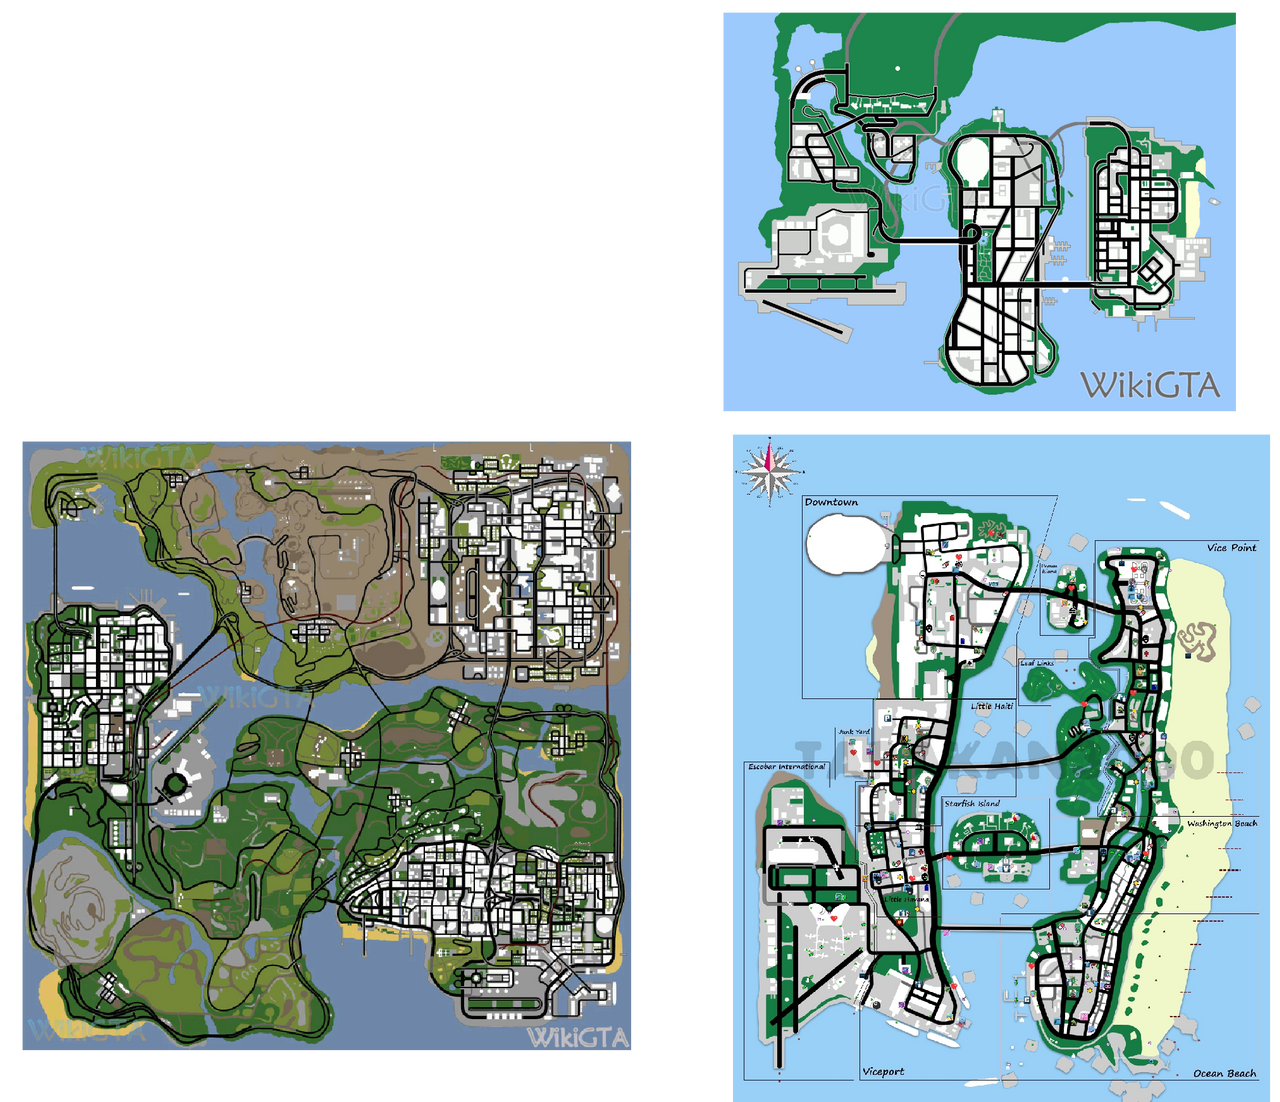 GTA V map in the 3D universe. : r/GTA